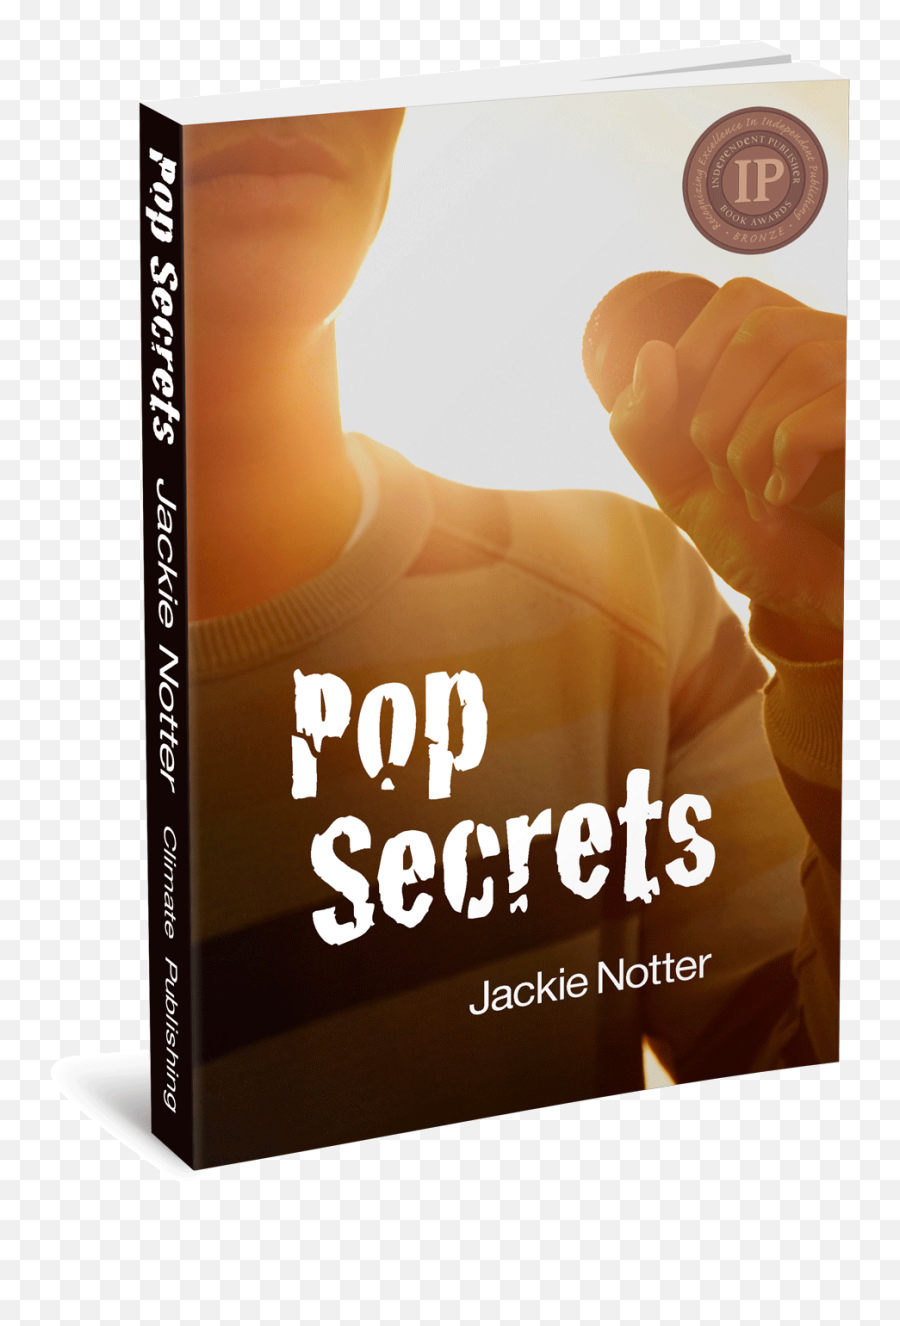 Cover Images U2013 Pop Secrets - Flyer Png,Crowd Transparent Background